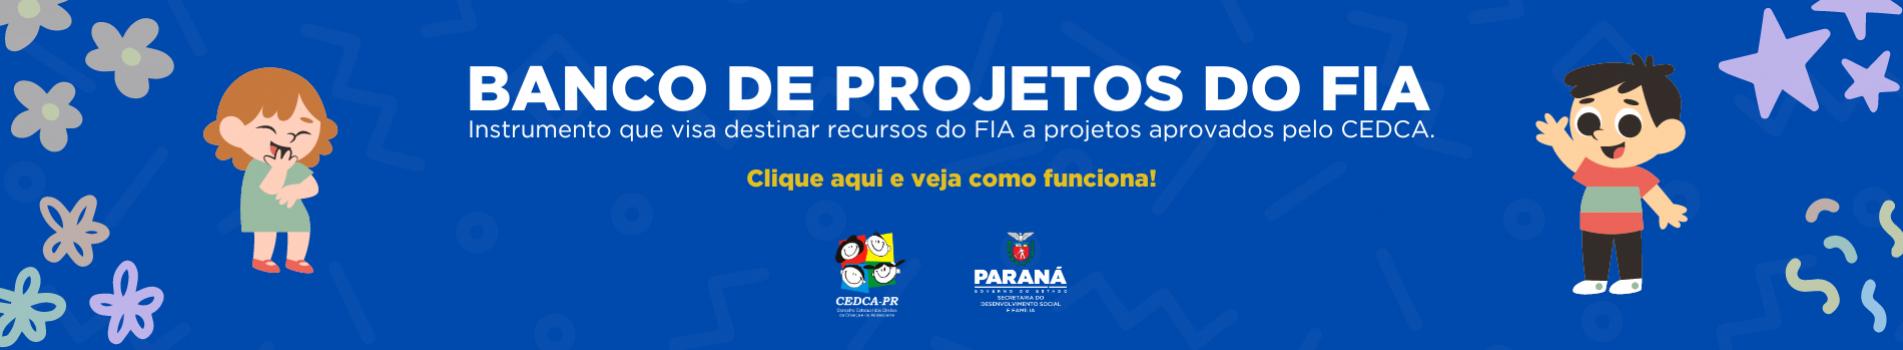 banco_de_projetos_do_fia_1.png